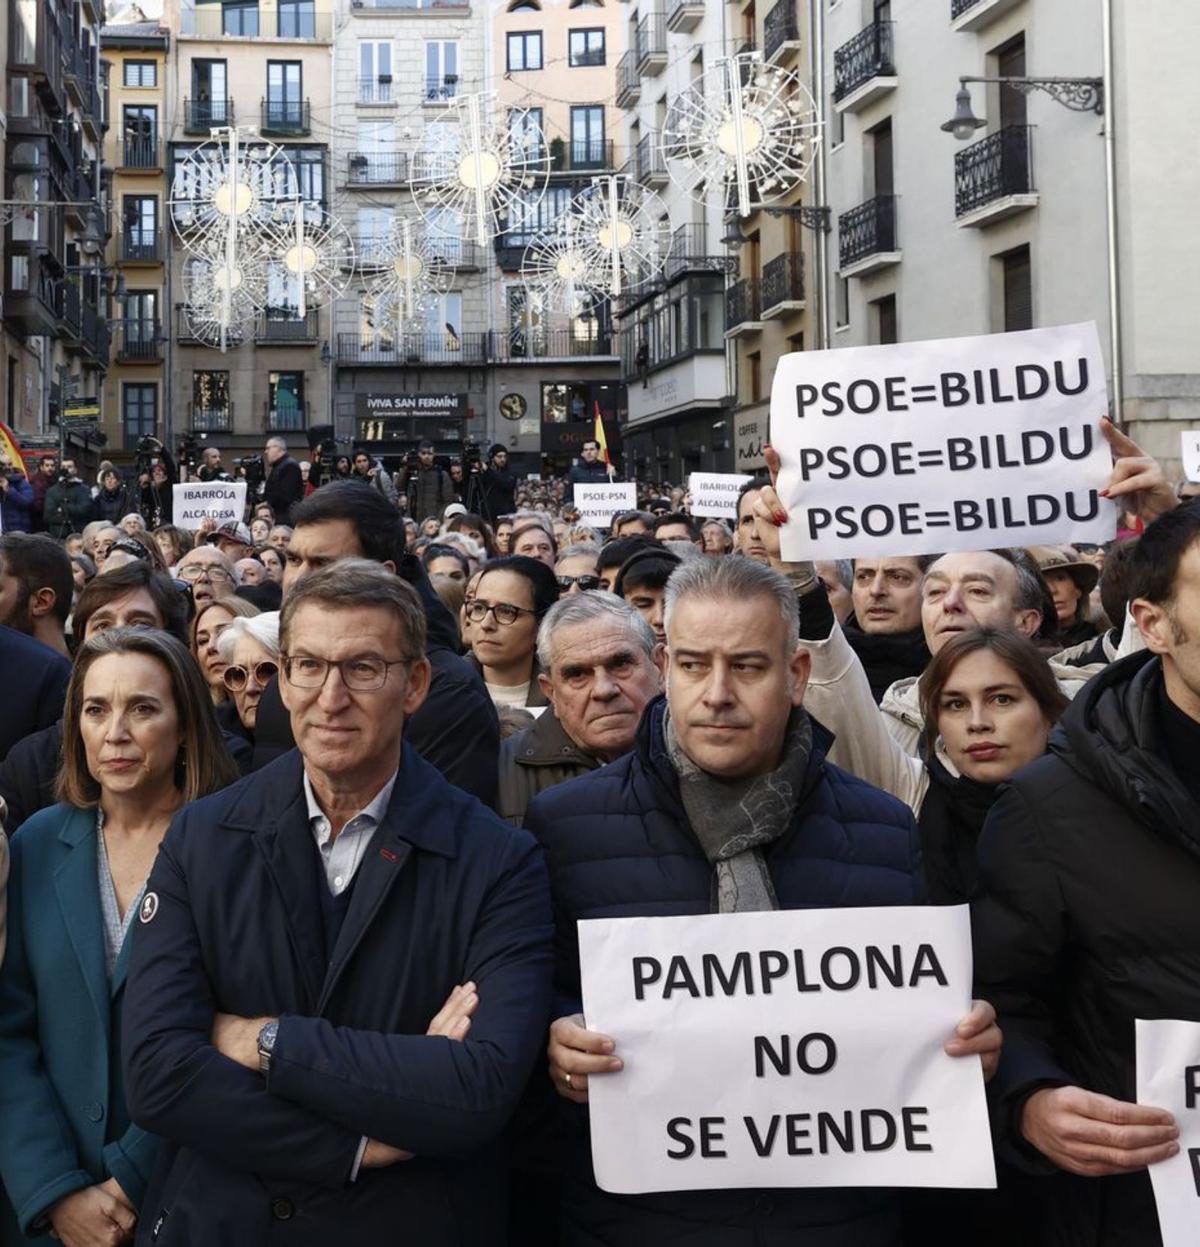 Feijóo s’afegeix a Pamplona a la protesta contra el pacte PSOE-Bildu